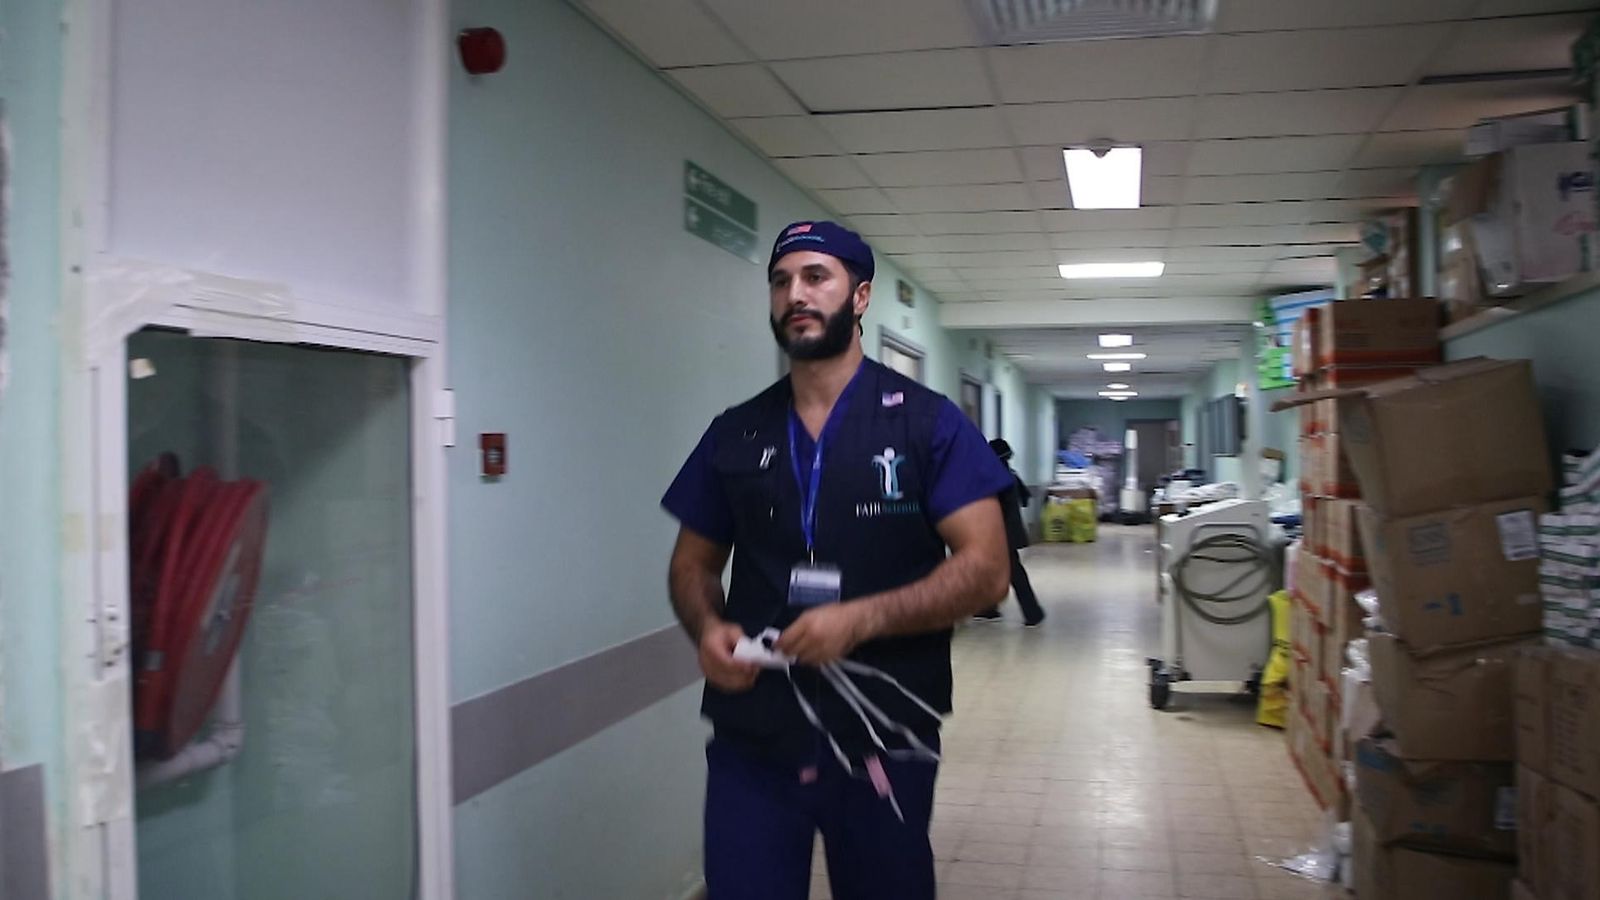 Un ancien médecin du NHS coincé à Gaza pendant son placement à l’hôpital déclare que sa famille est « terrifiée » mais qu’il « doit continuer » |  Nouvelles du monde